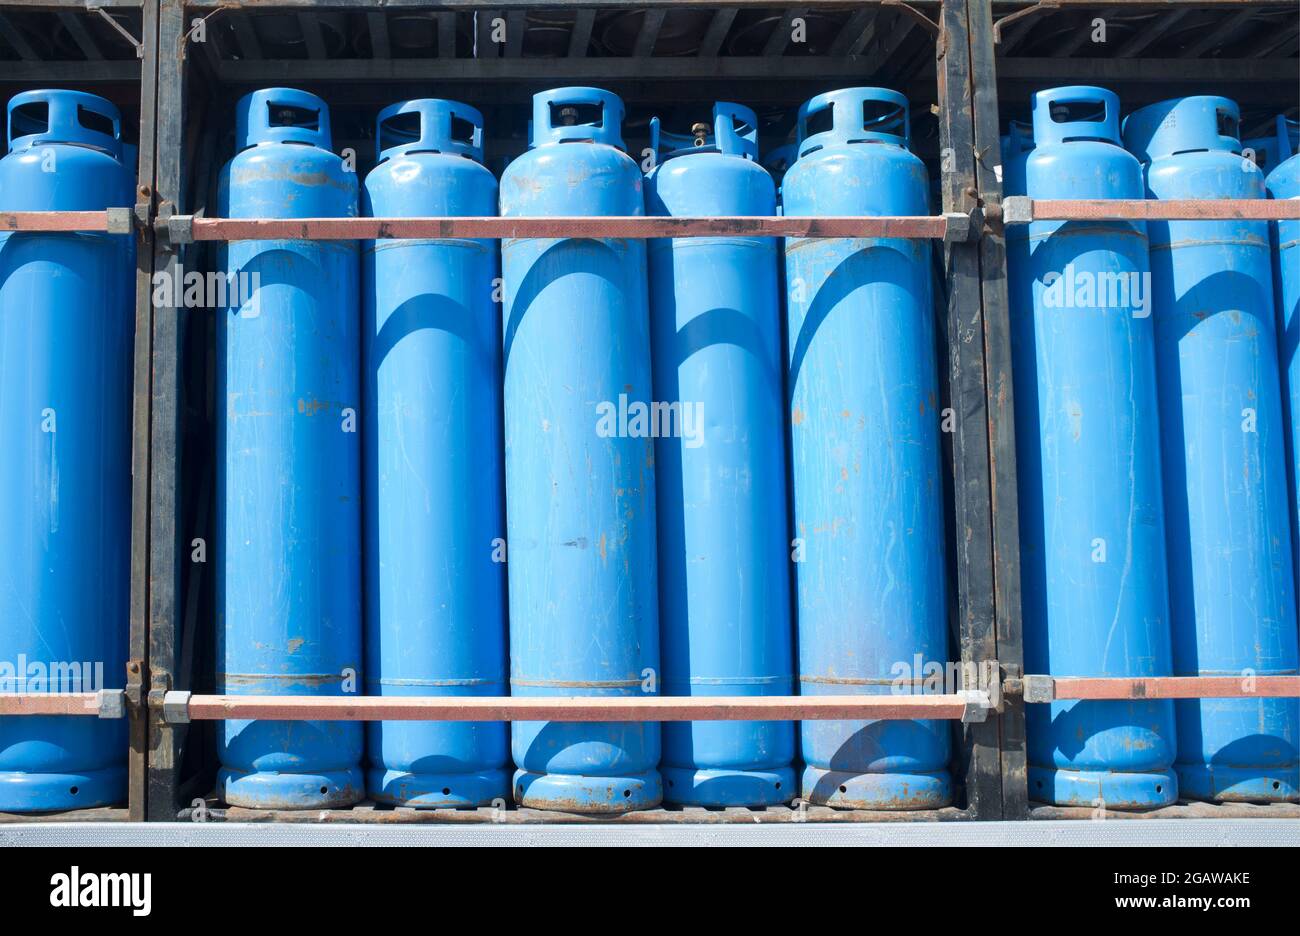 Carichi di bombole blu di gas propano assortite su un carrello. Trasporto di materiali pericolosi Foto Stock